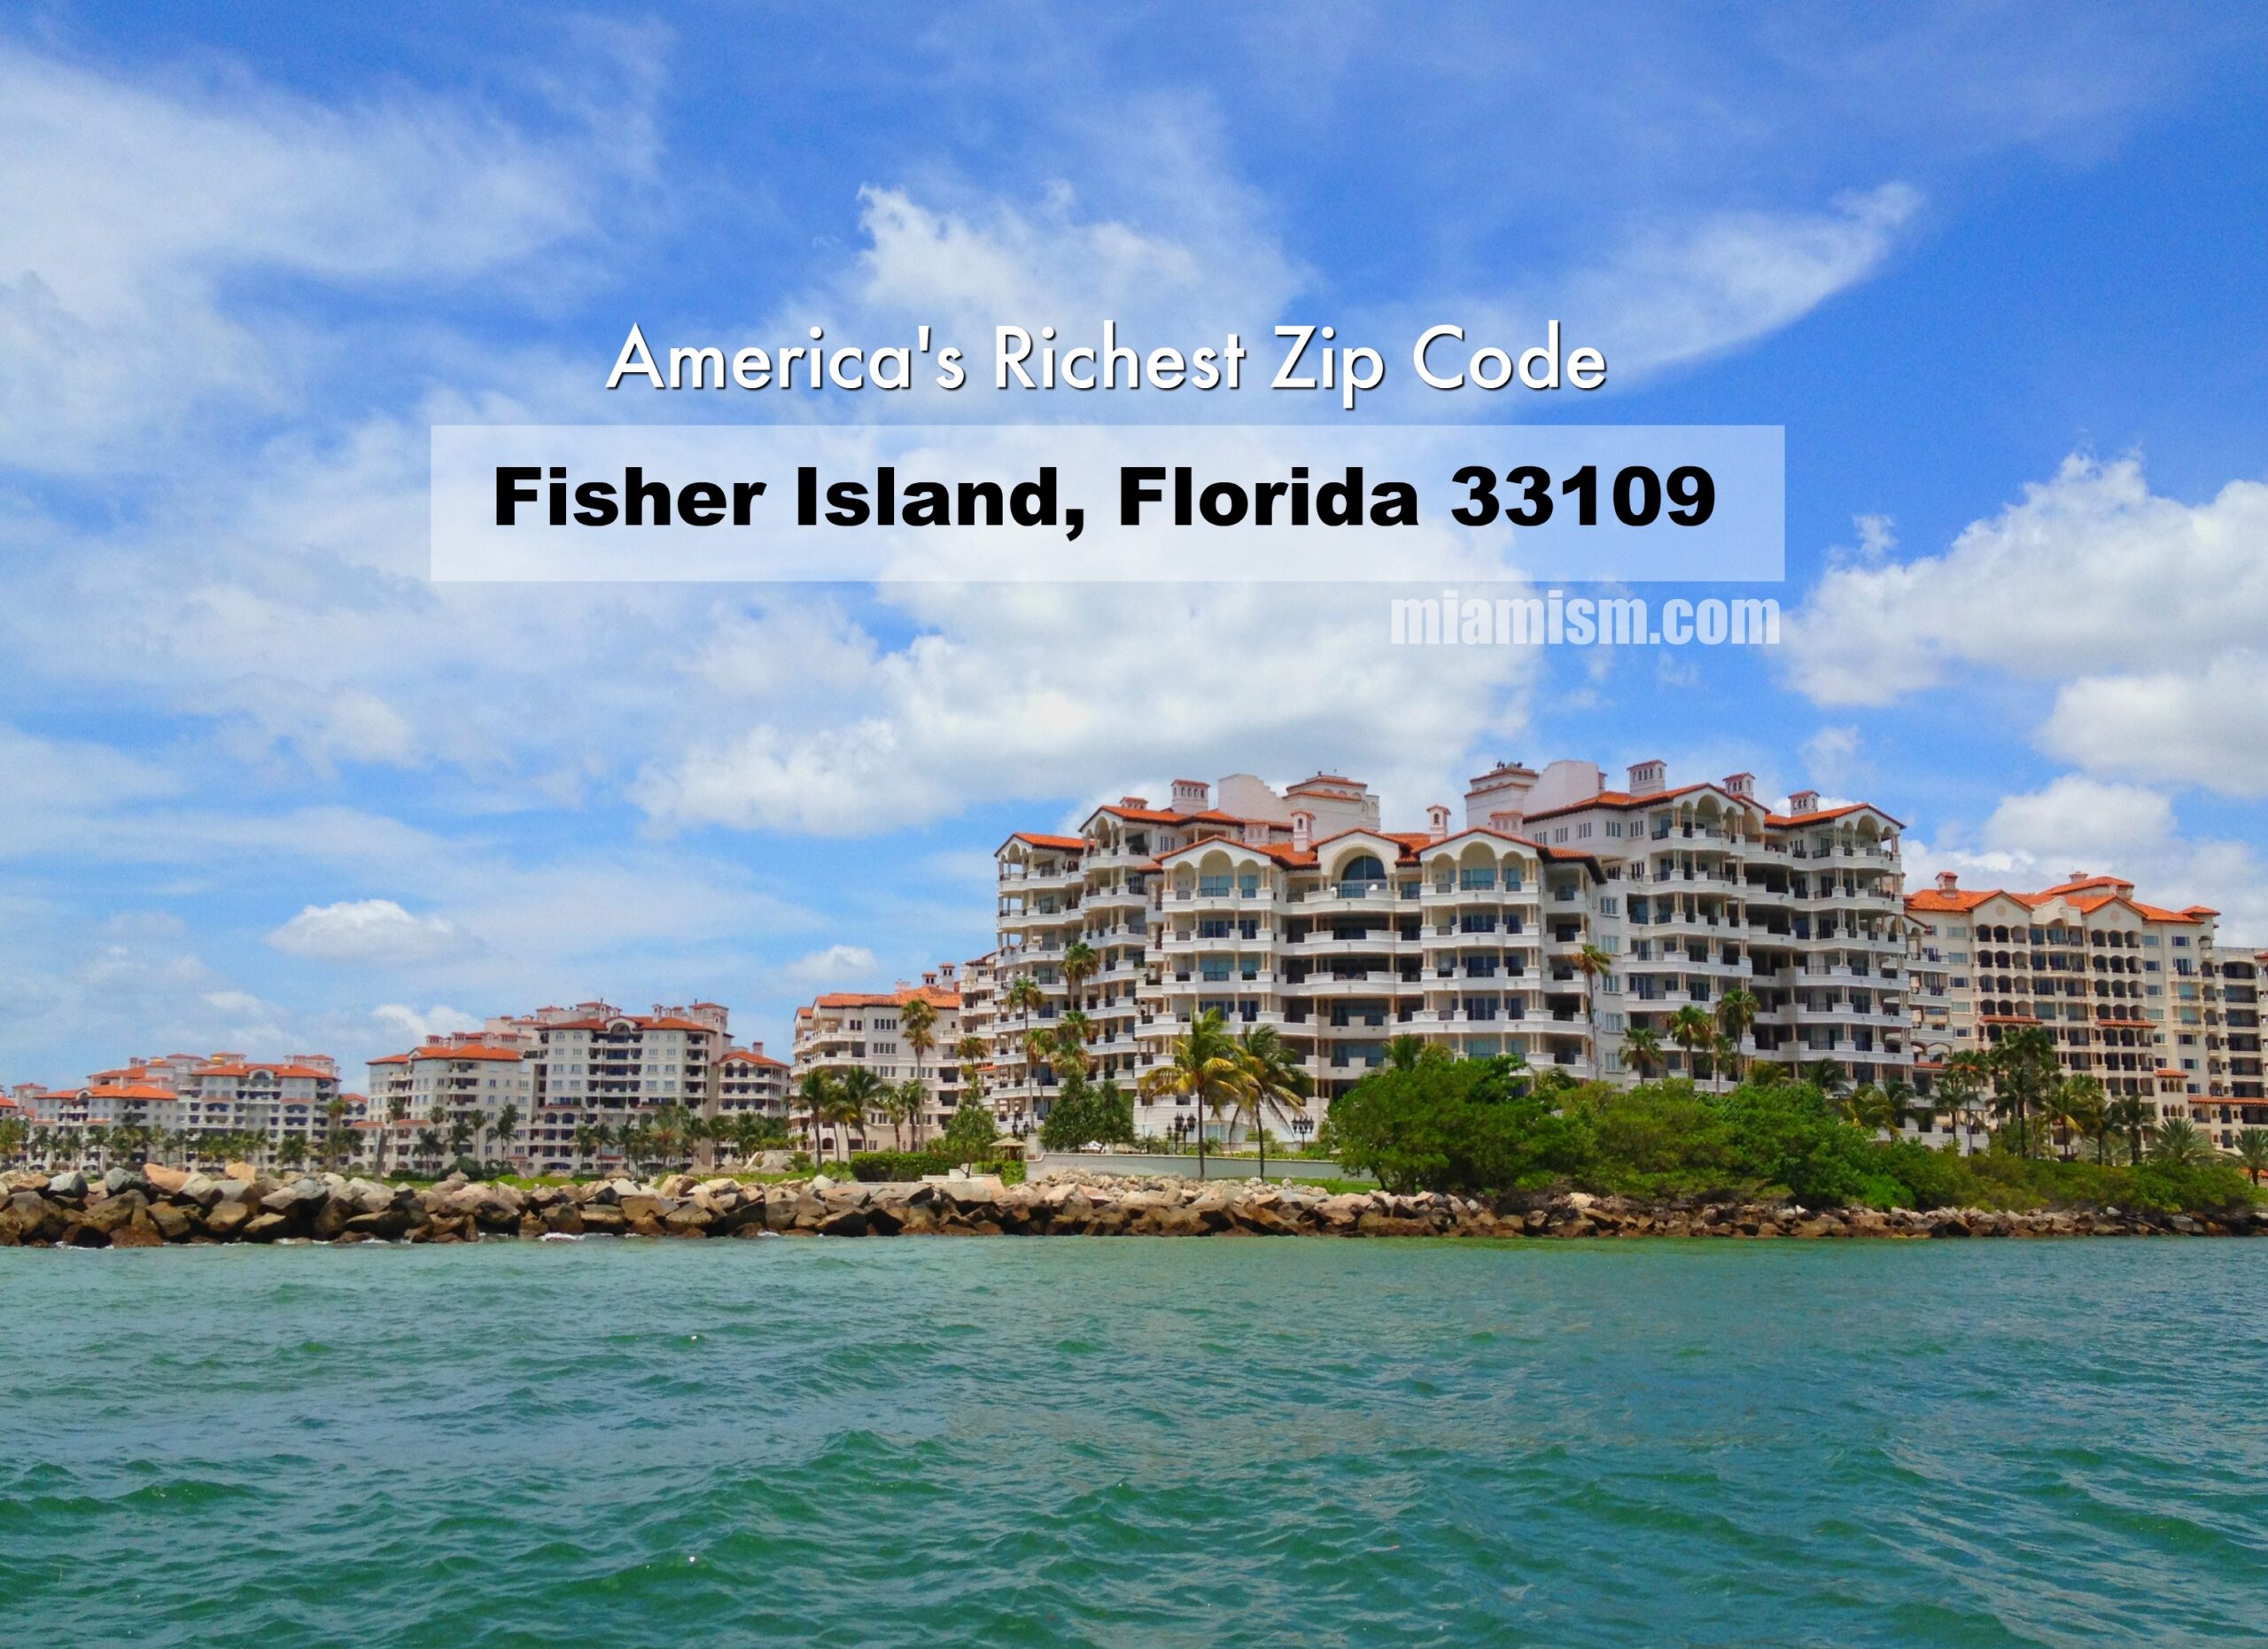 fisher-island-americas-richest-zip-code